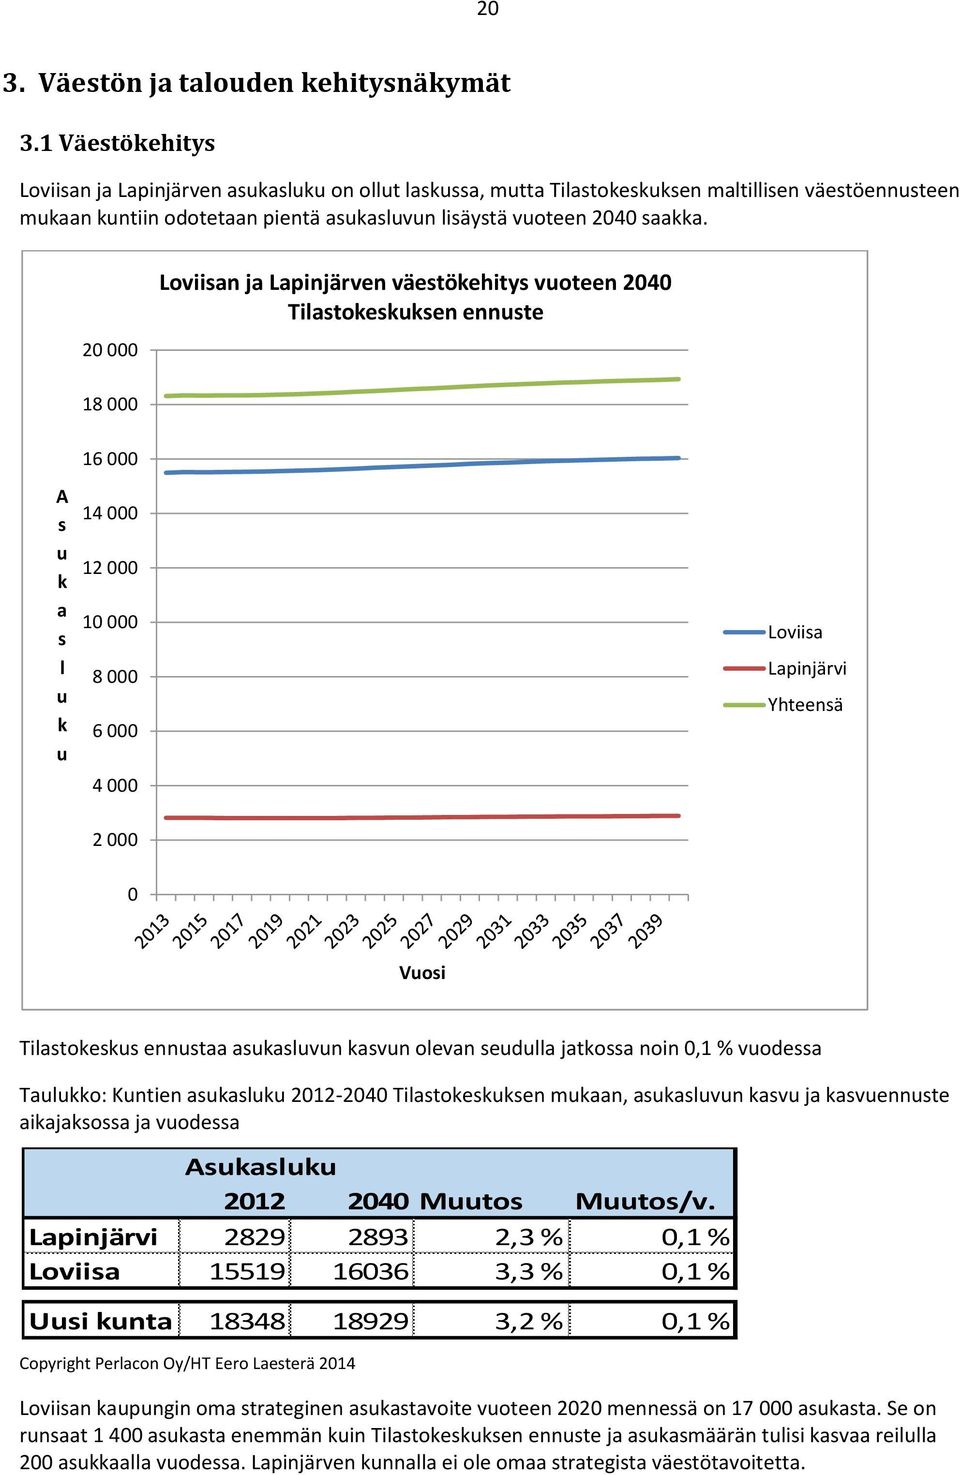 20 000 Loviisan ja Lapinjärven väestökehitys vuoteen 2040 Tilastokeskuksen ennuste 18 000 A s u k a s l u k u 16 000 14 000 12 000 10 000 8 000 6 000 4 000 Loviisa Lapinjärvi Yhteensä 2 000 0 Vuosi